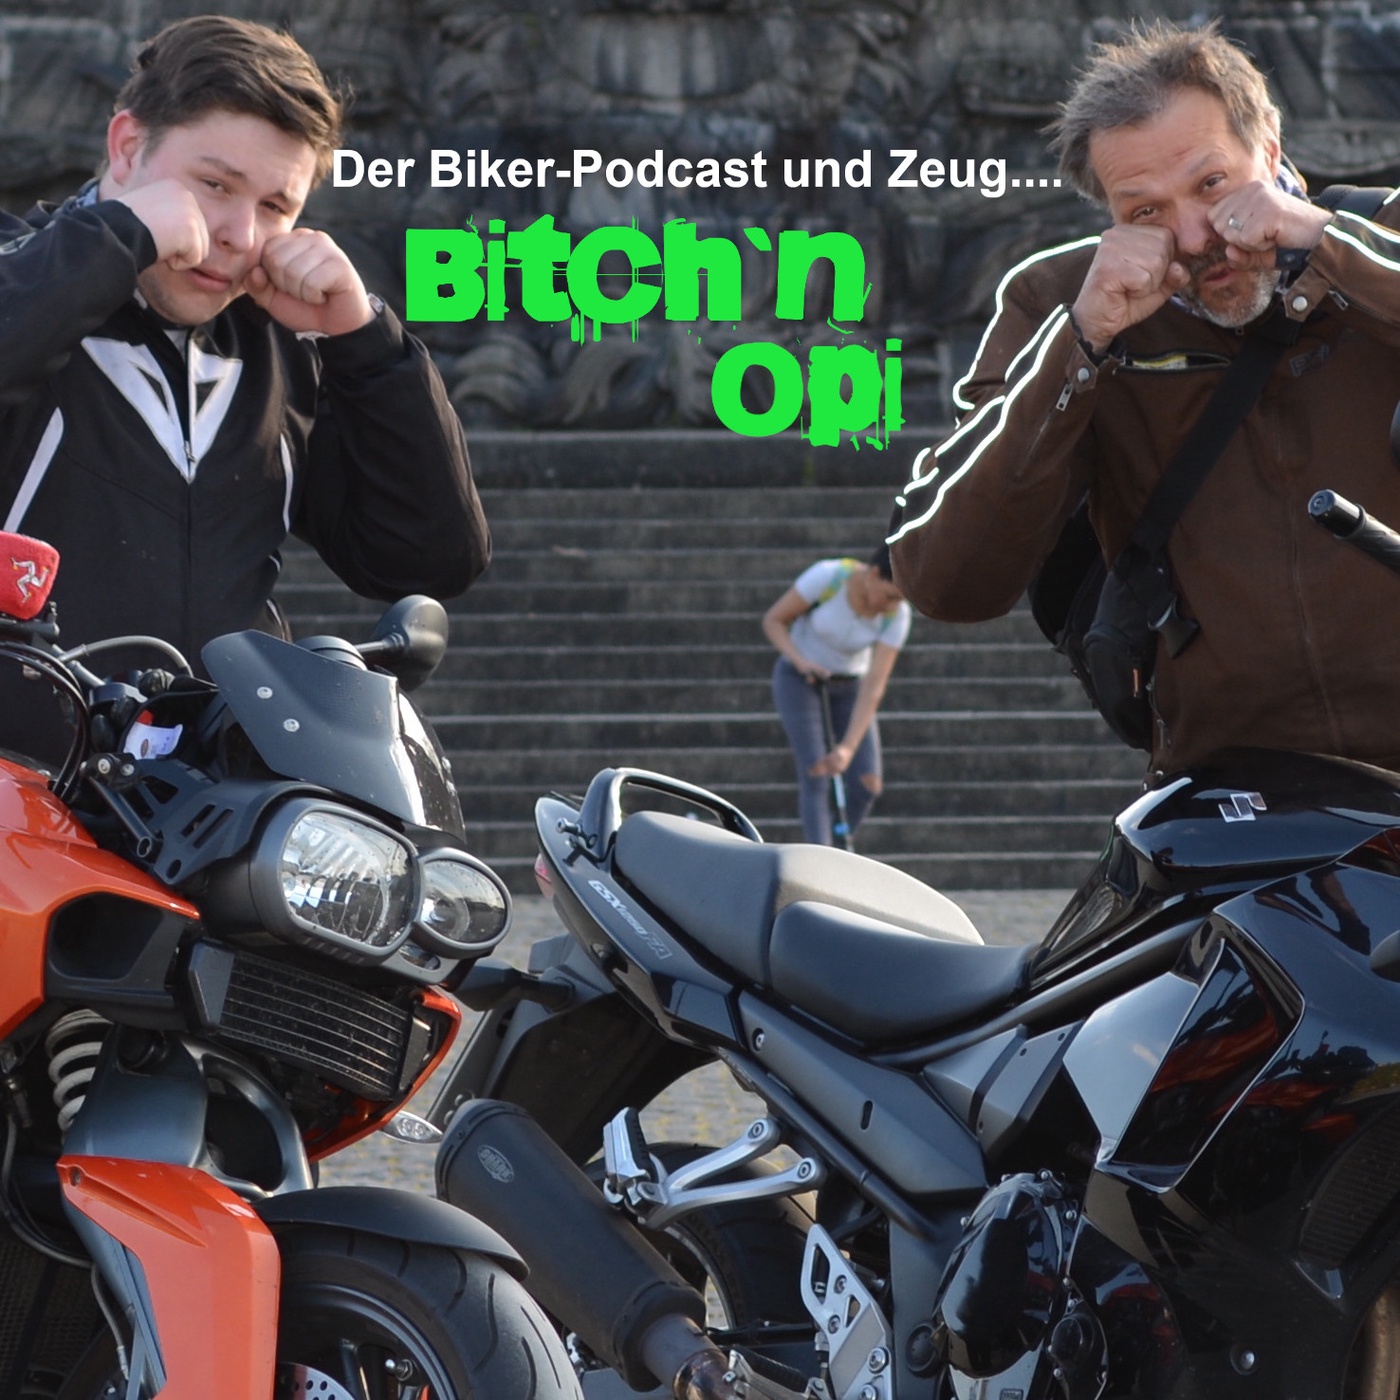 Bitch`n Opi - Der Motorrad-Podcast und Zeug